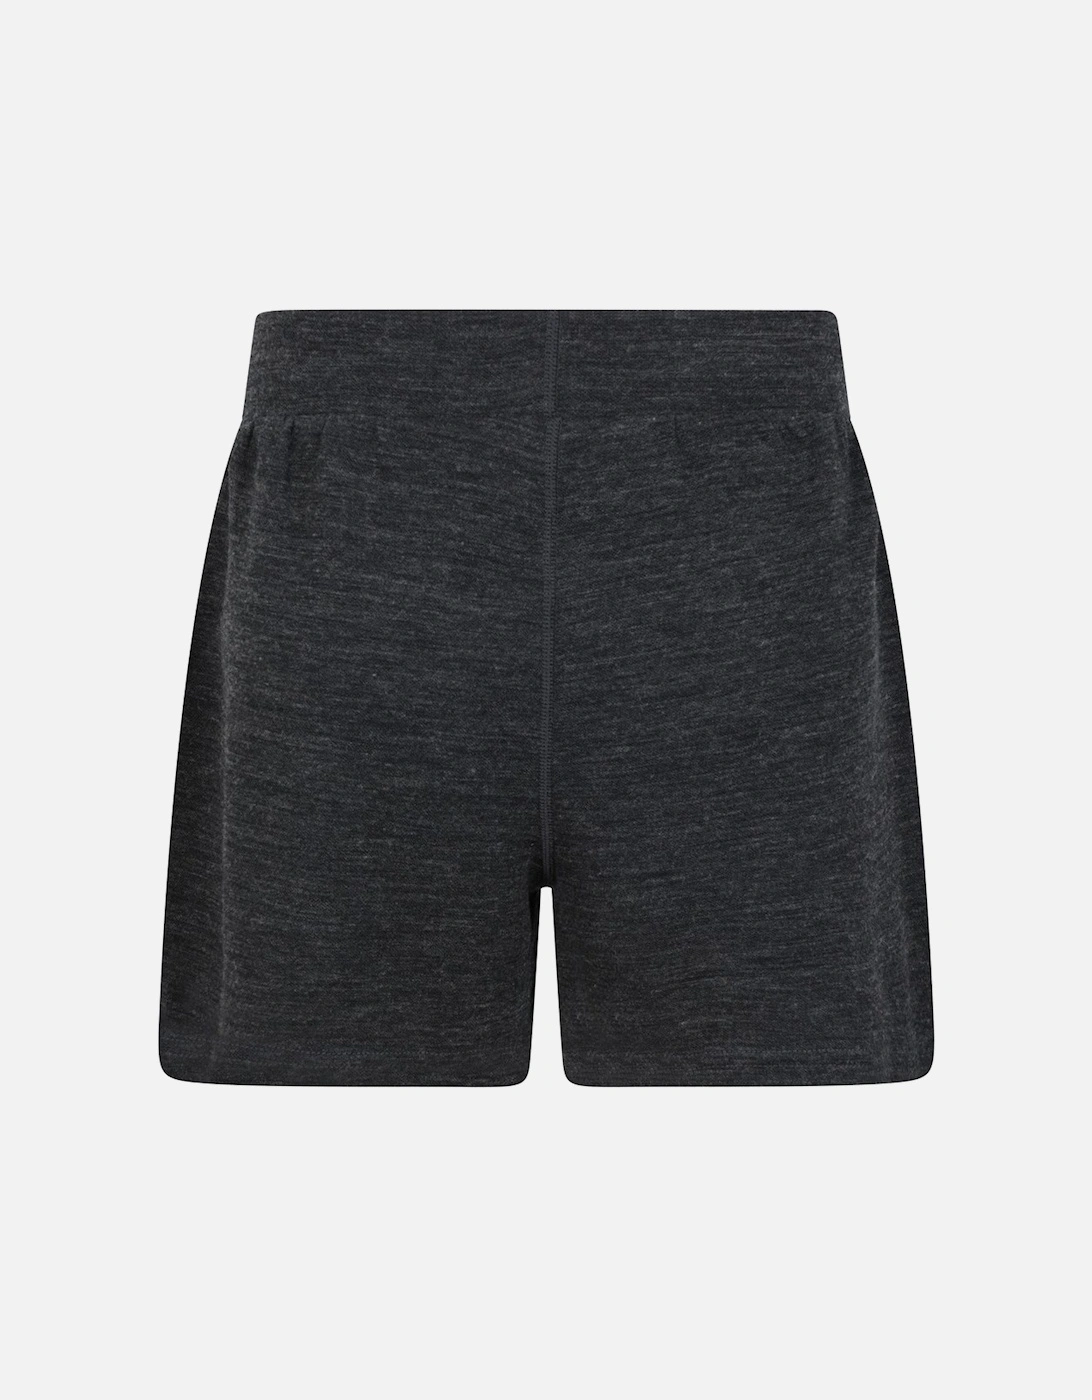 Womens/Ladies Merino Wool Sweat Shorts